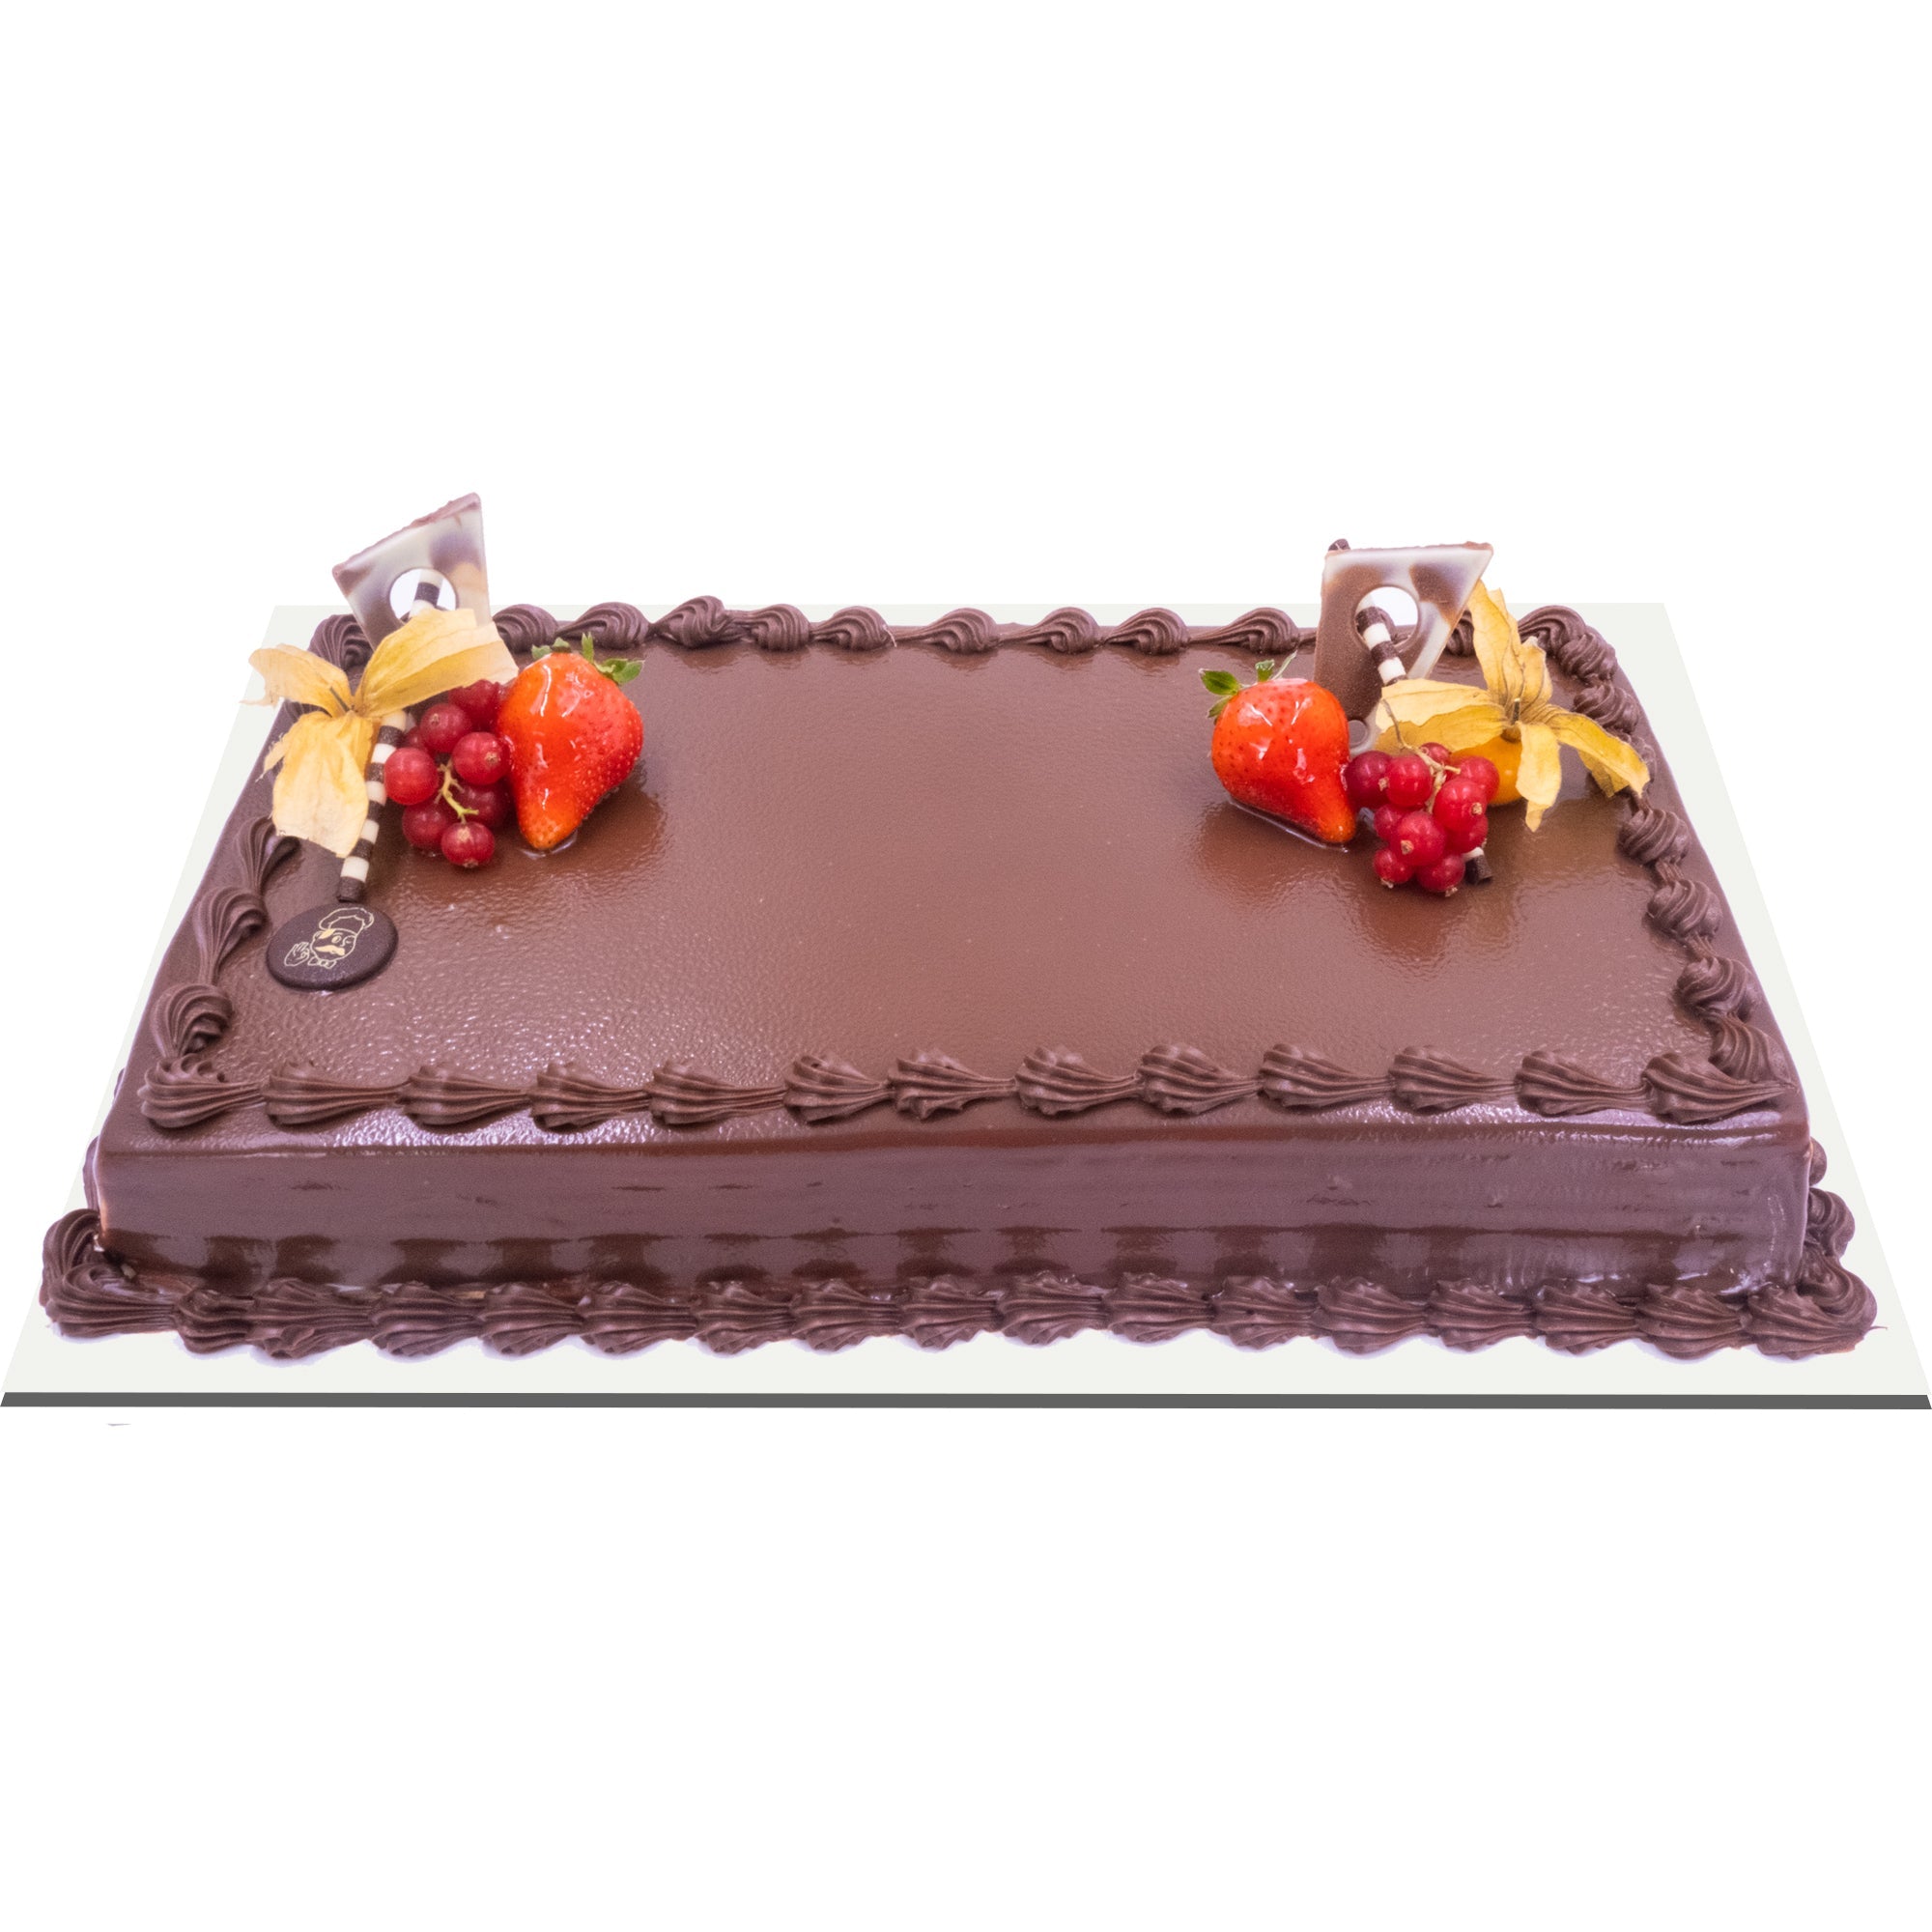 CHOCO TRUFFLE VALENTINE CAKE - Rashmi's Bakery